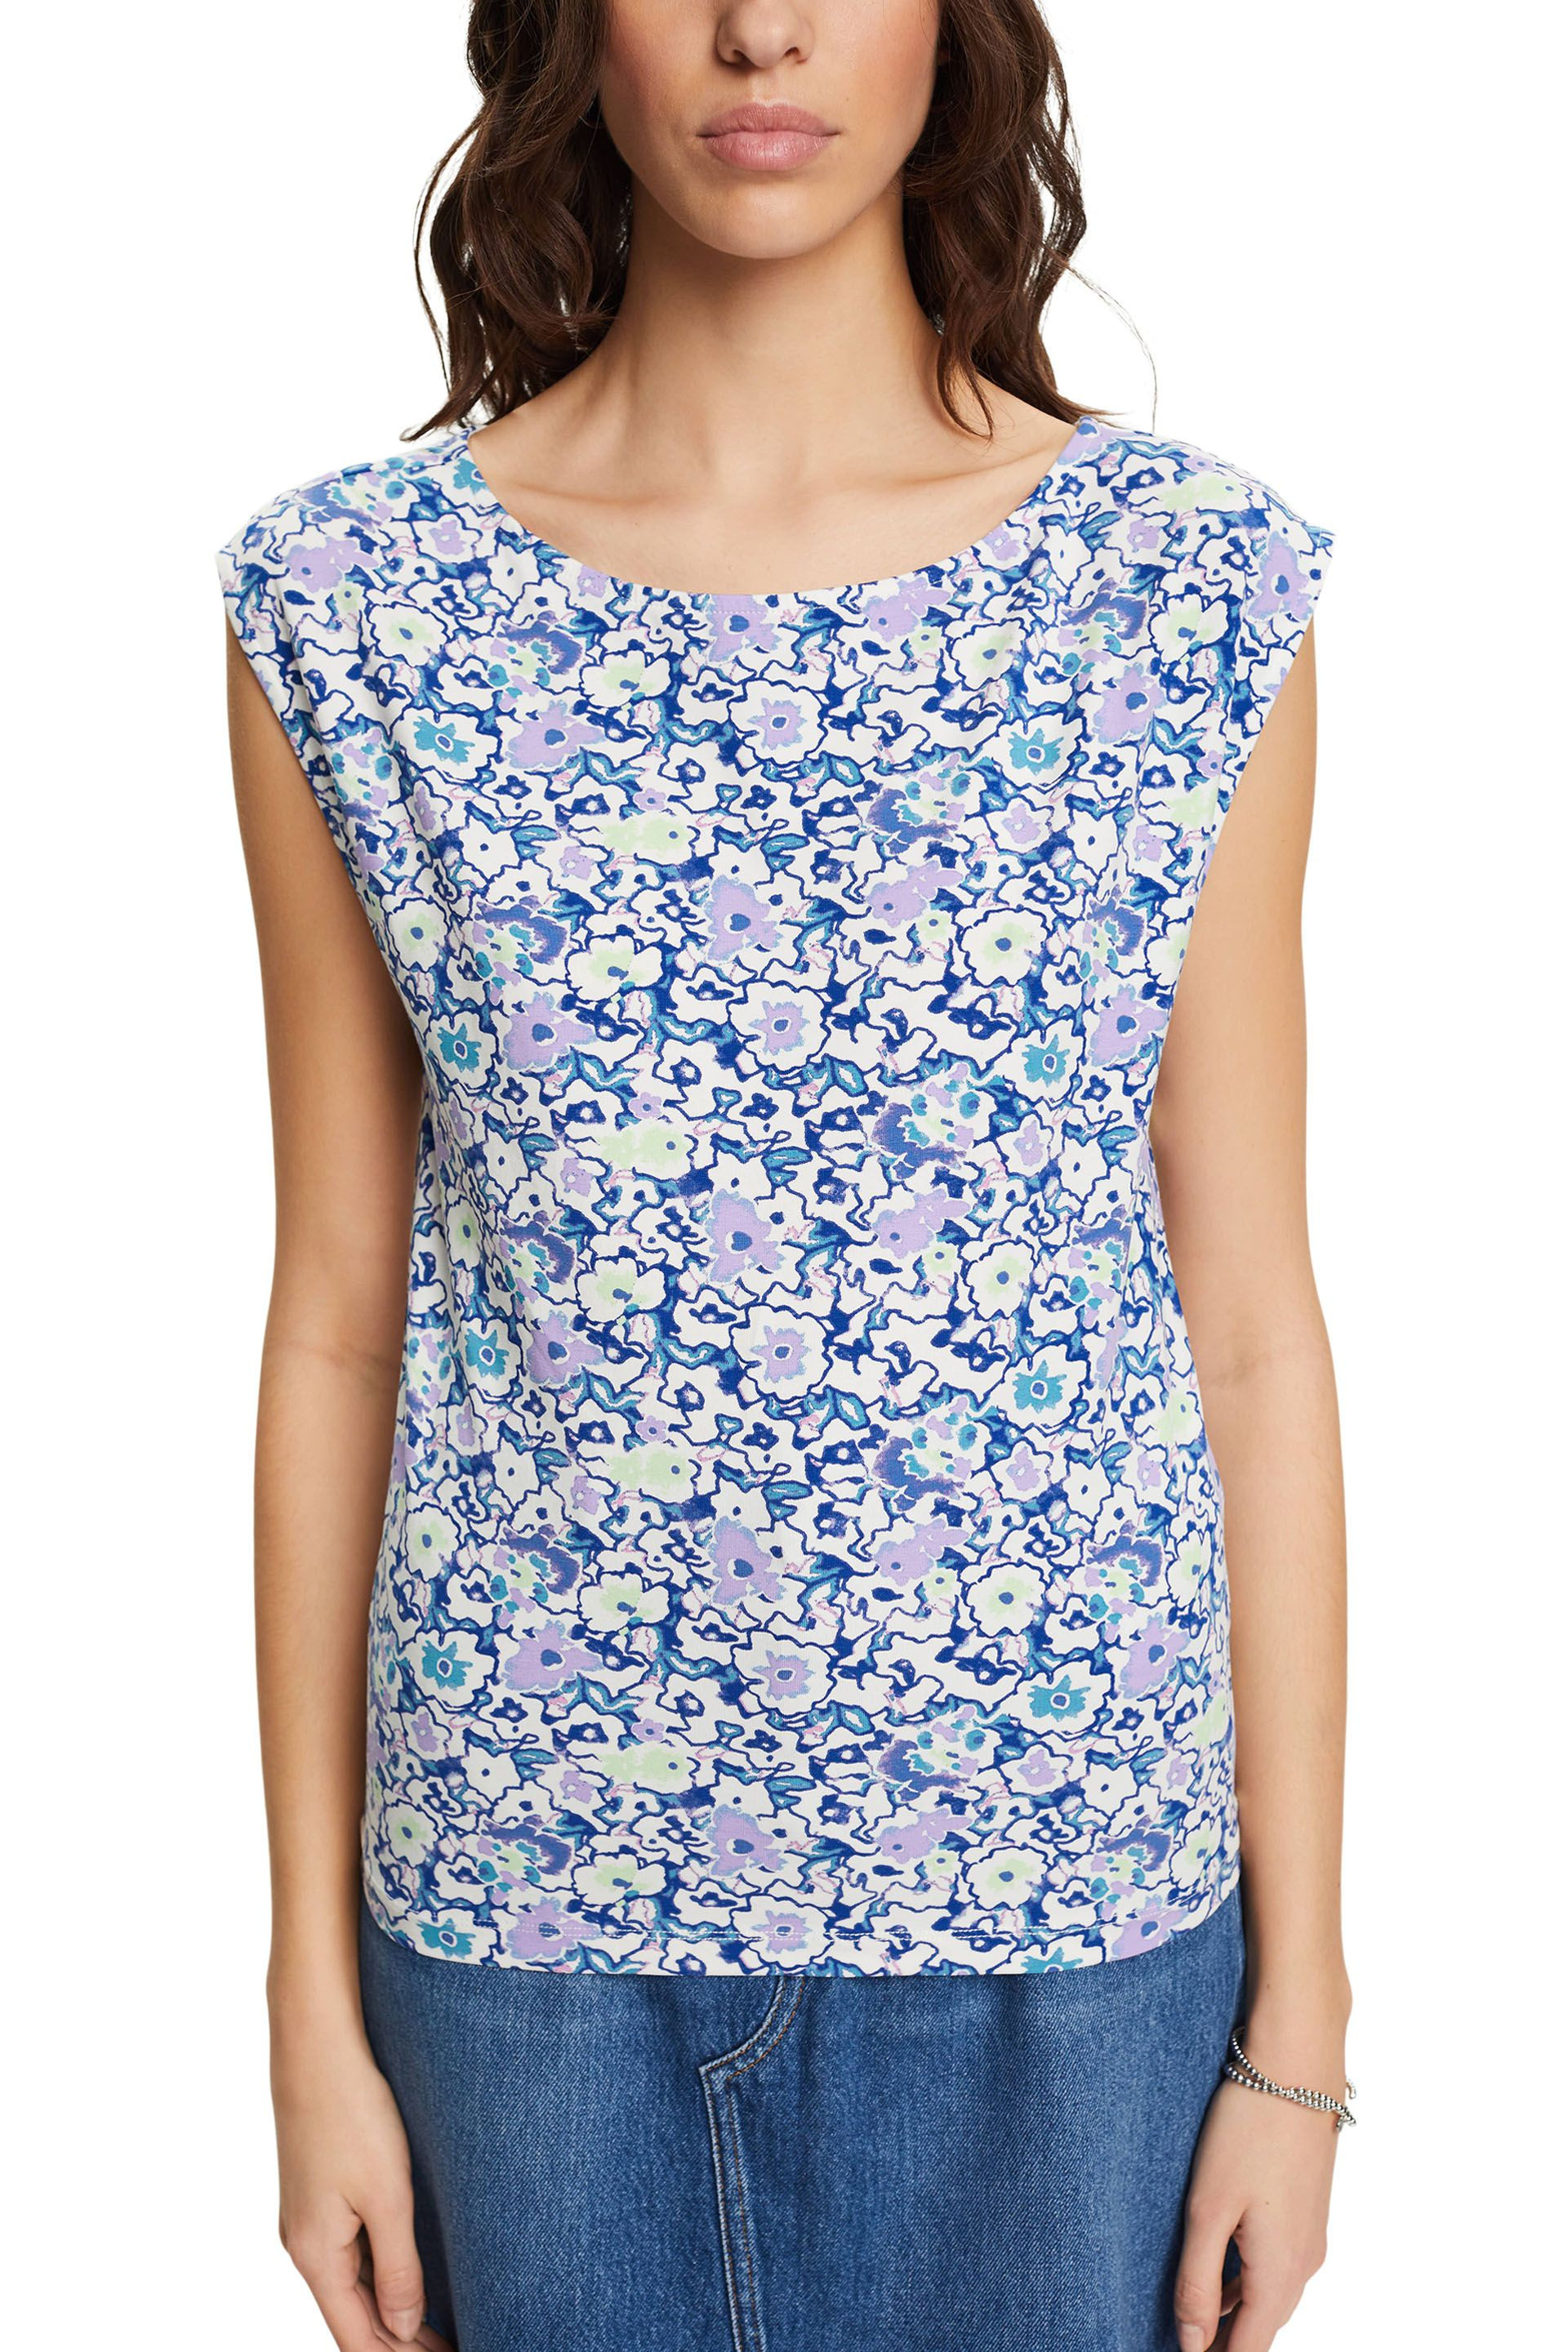 Esprit - Floral print T-shirt, Blue, large image number 2